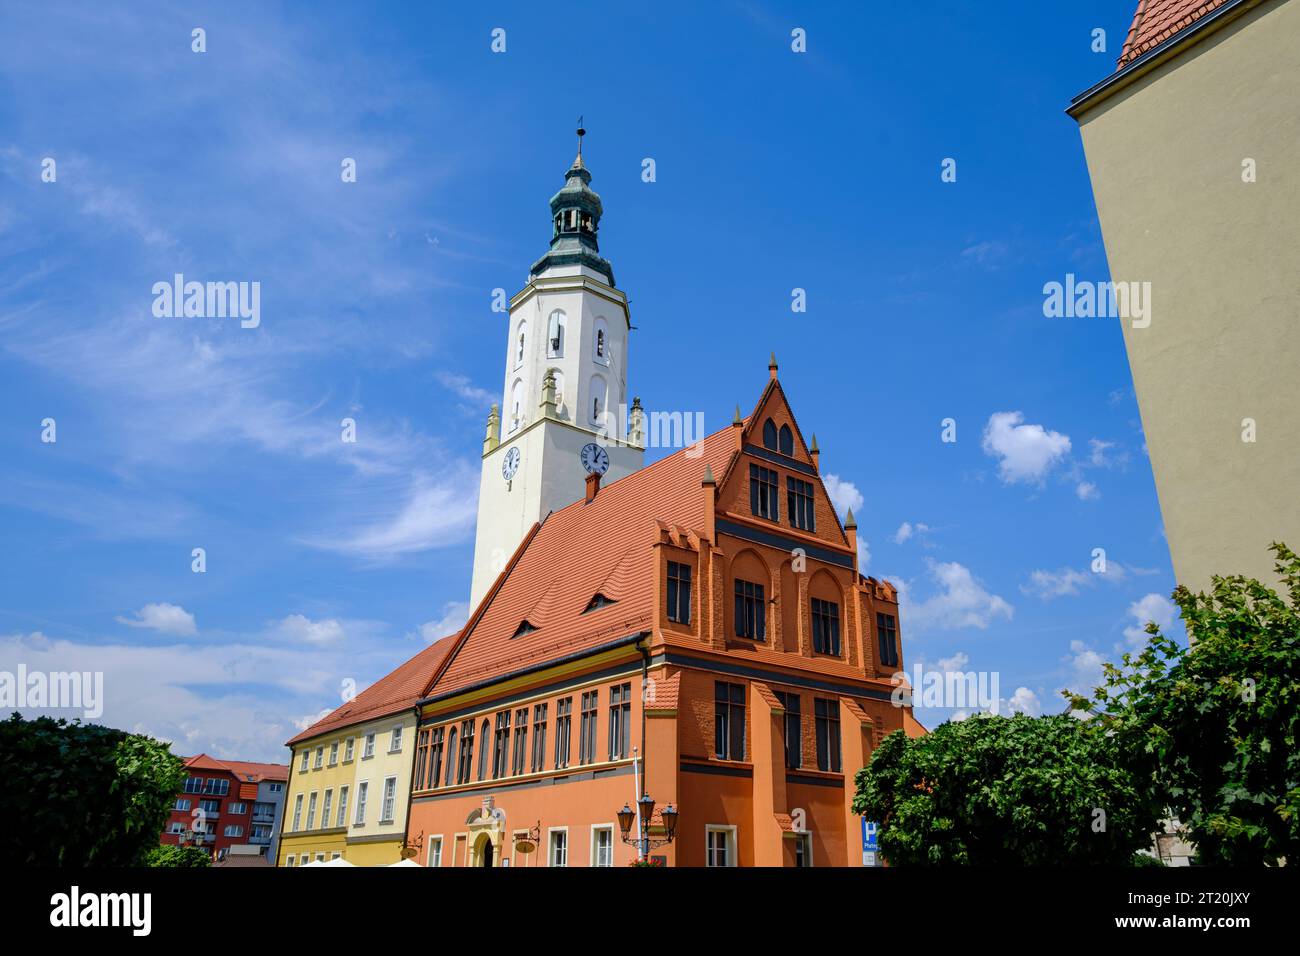 Historisches Rathaus aus Gotik und Renaissance auf dem Ring (Marktplatz) von Namyslow (Namslau), Woiwodschaft Oppeln, Polen. Stockfoto